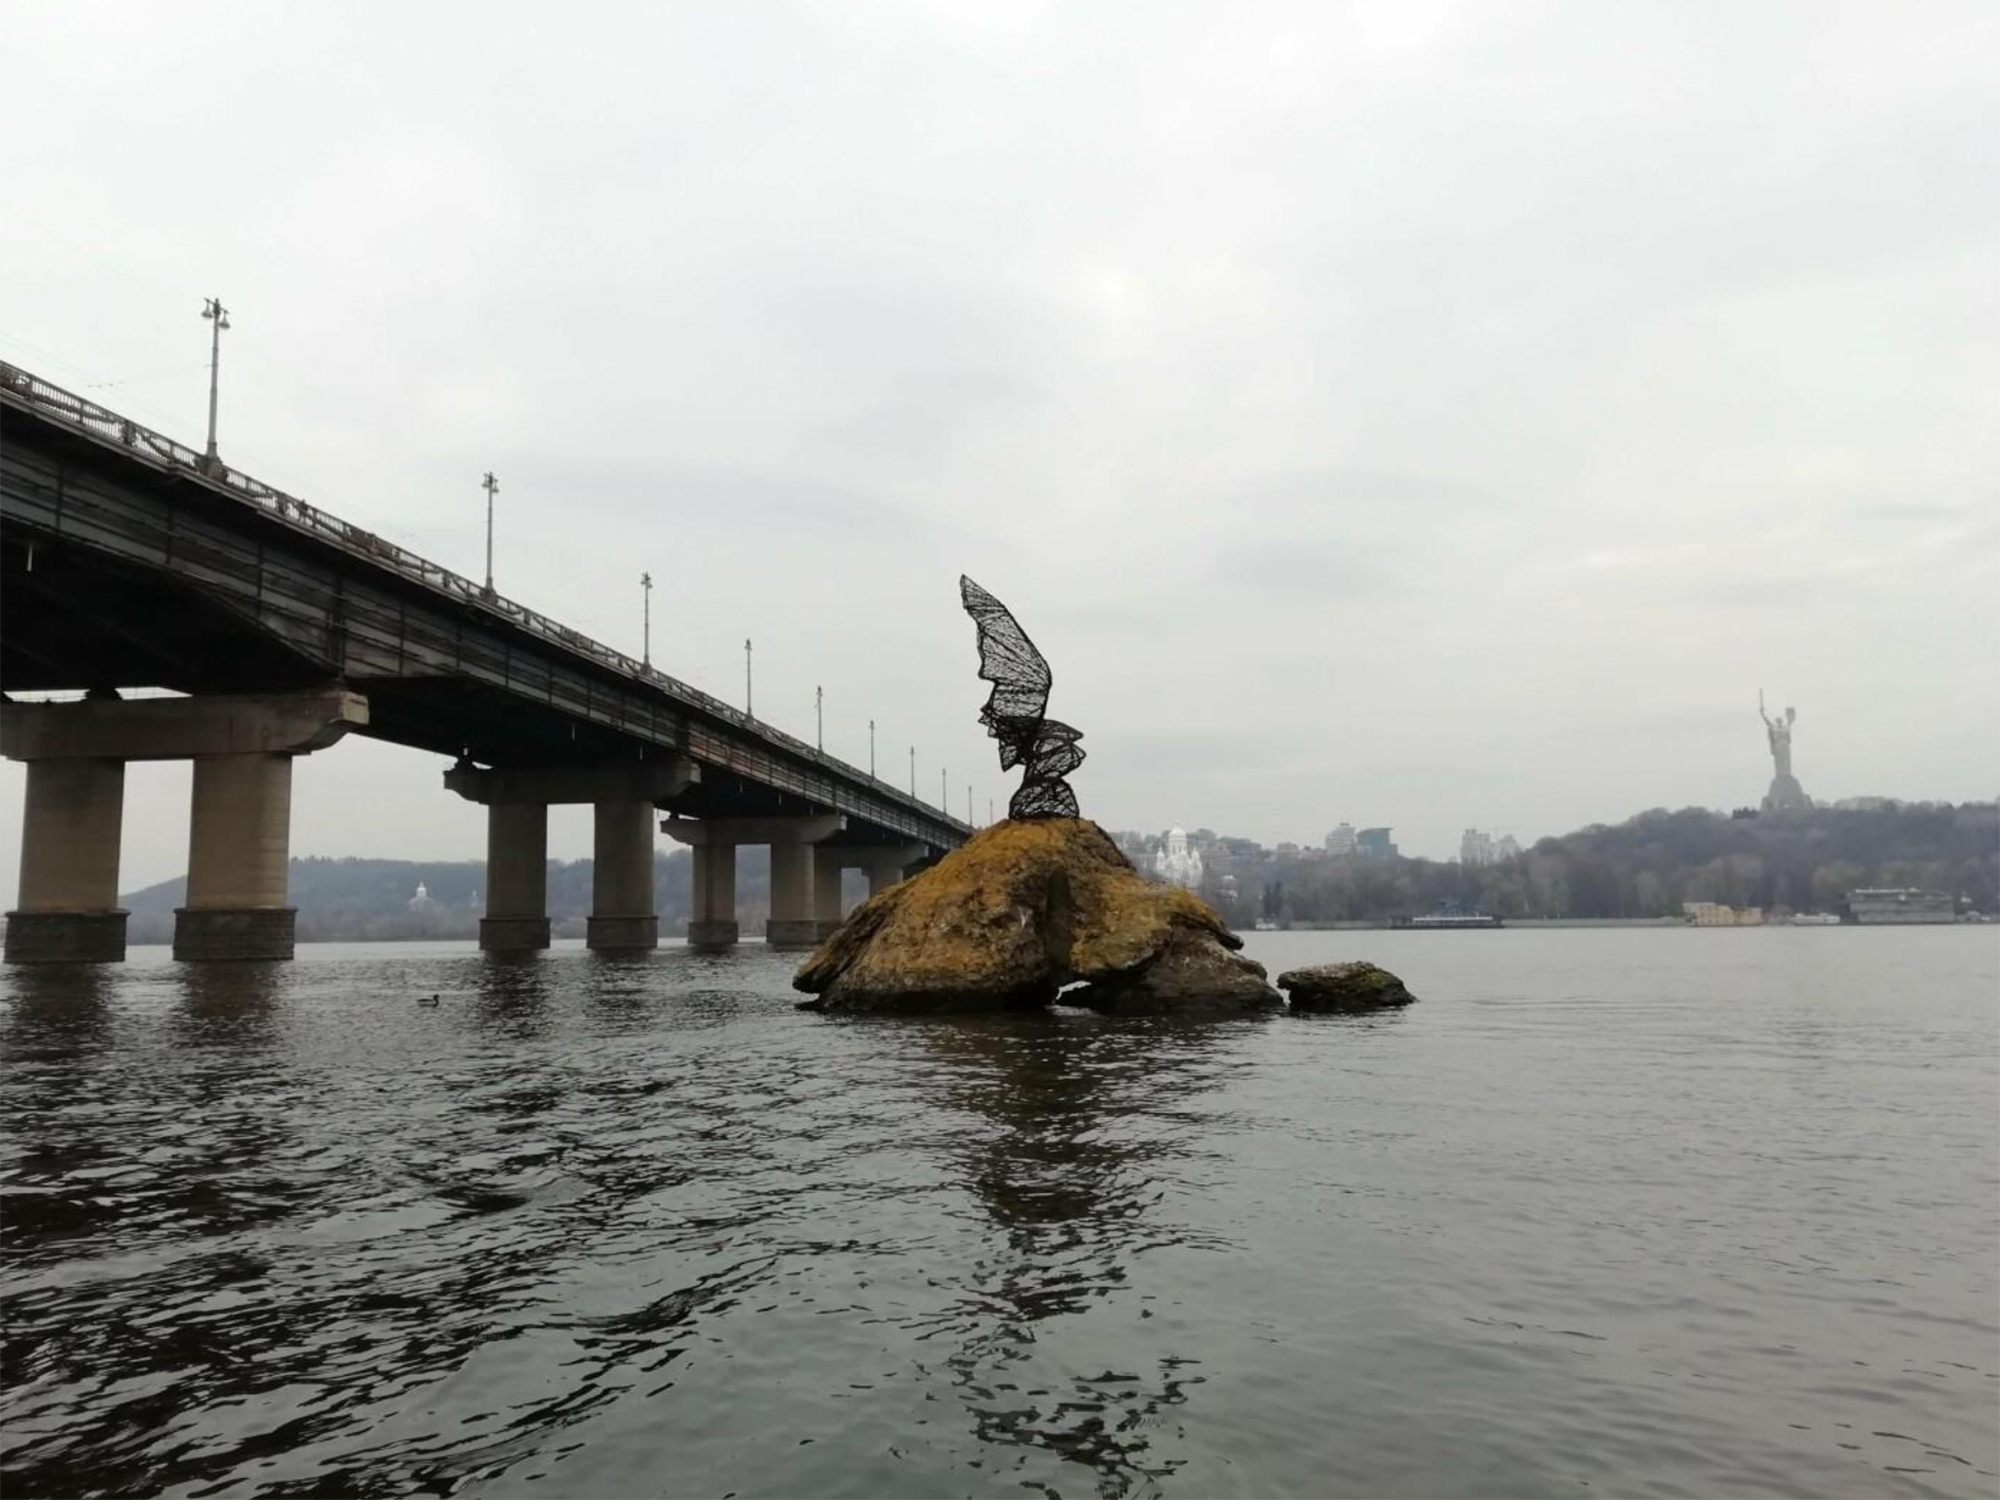 Редкая птица, скульптура на реке, Днепр, Киев, Владимиров Алексей